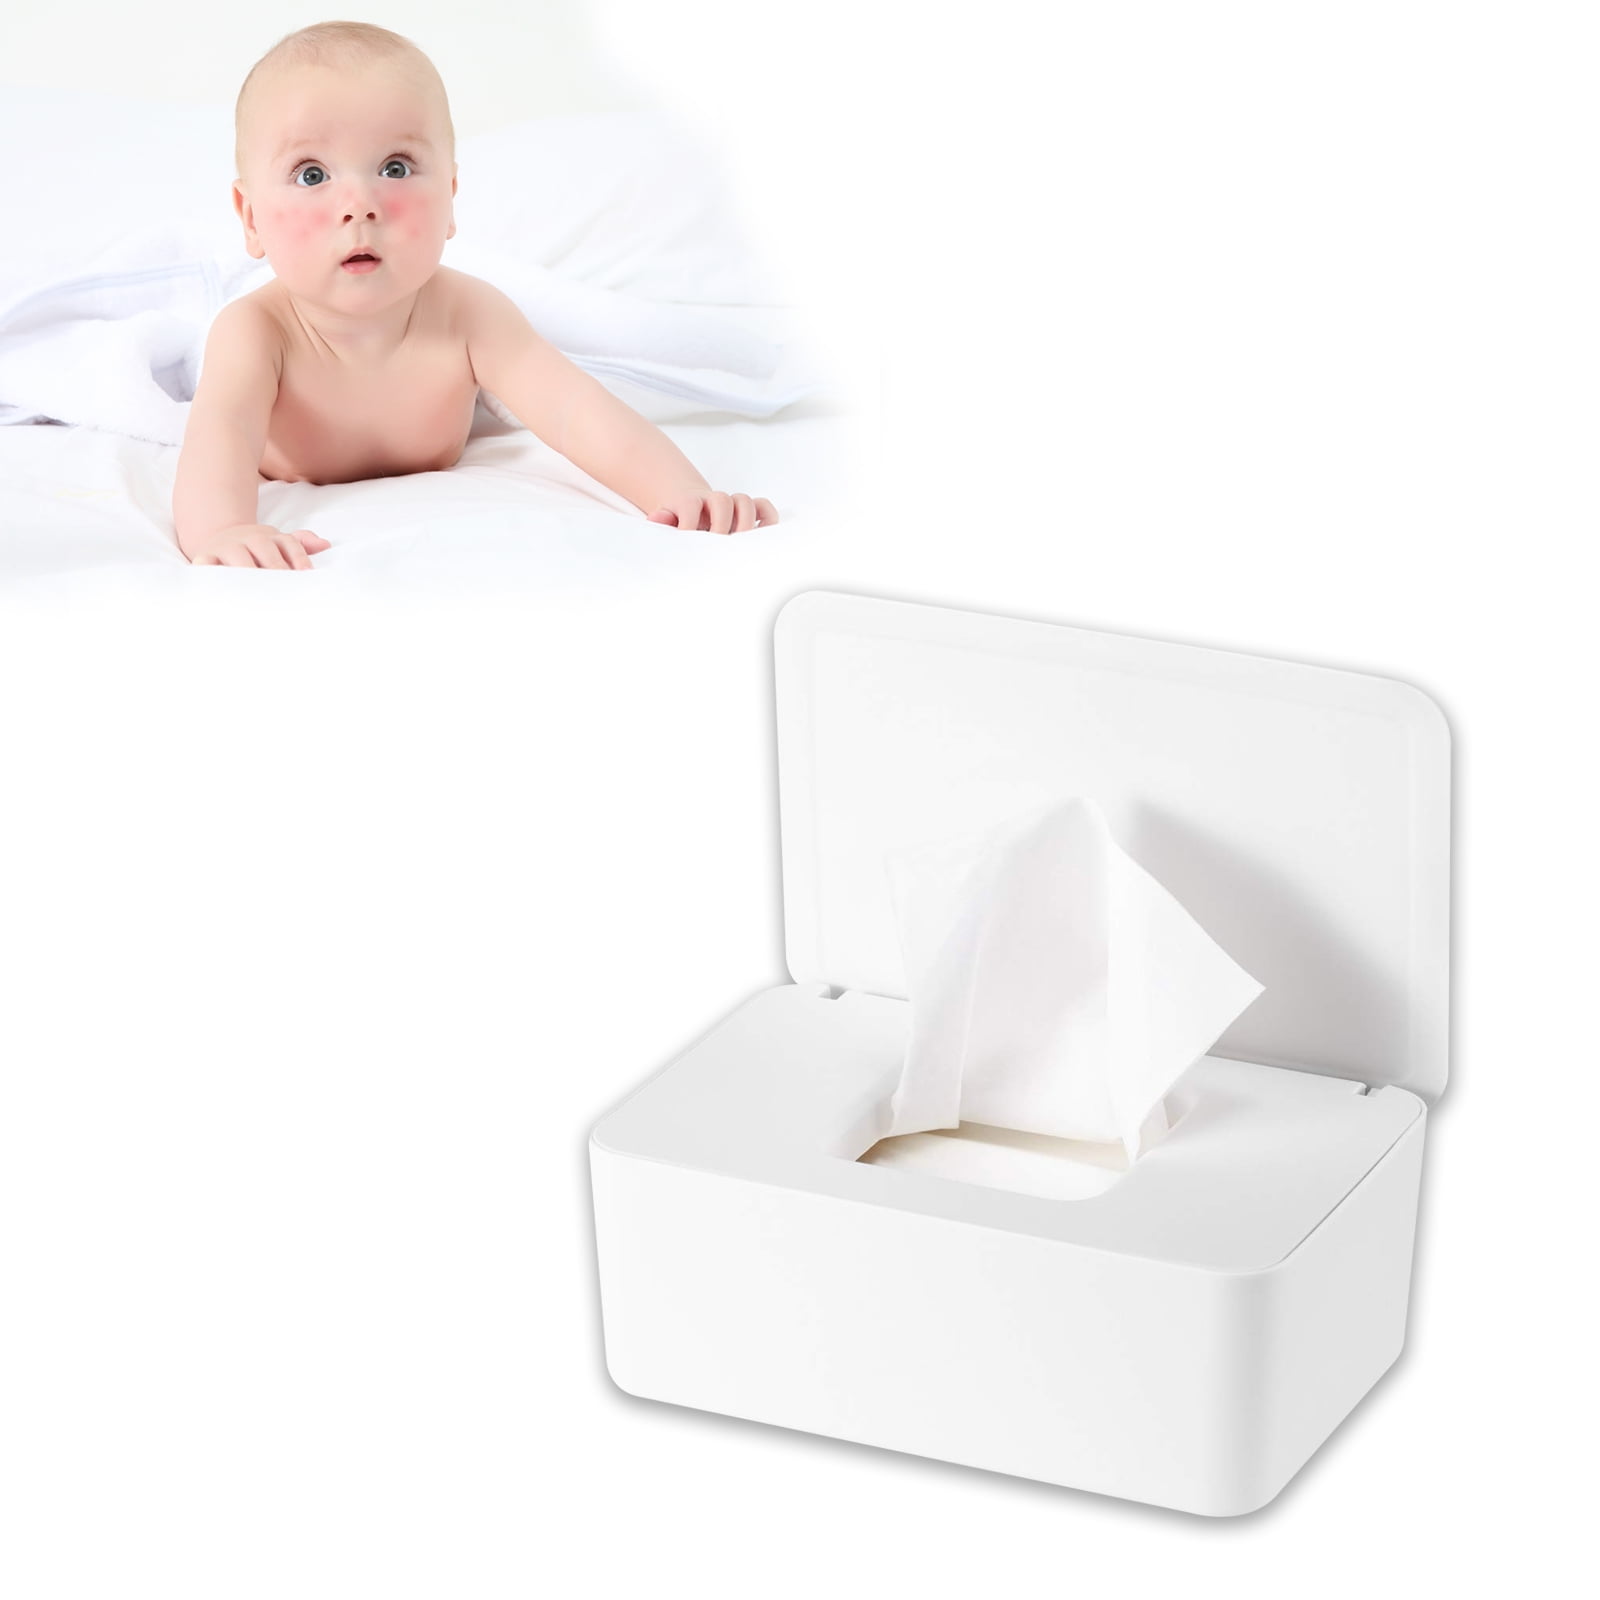 Diaper Wipe Holders 1 PC White Wipe Container Case Moist Toilet Tissue Dispenser Box Seal Design Prevent Moisture Loss Wipes Dispenser 